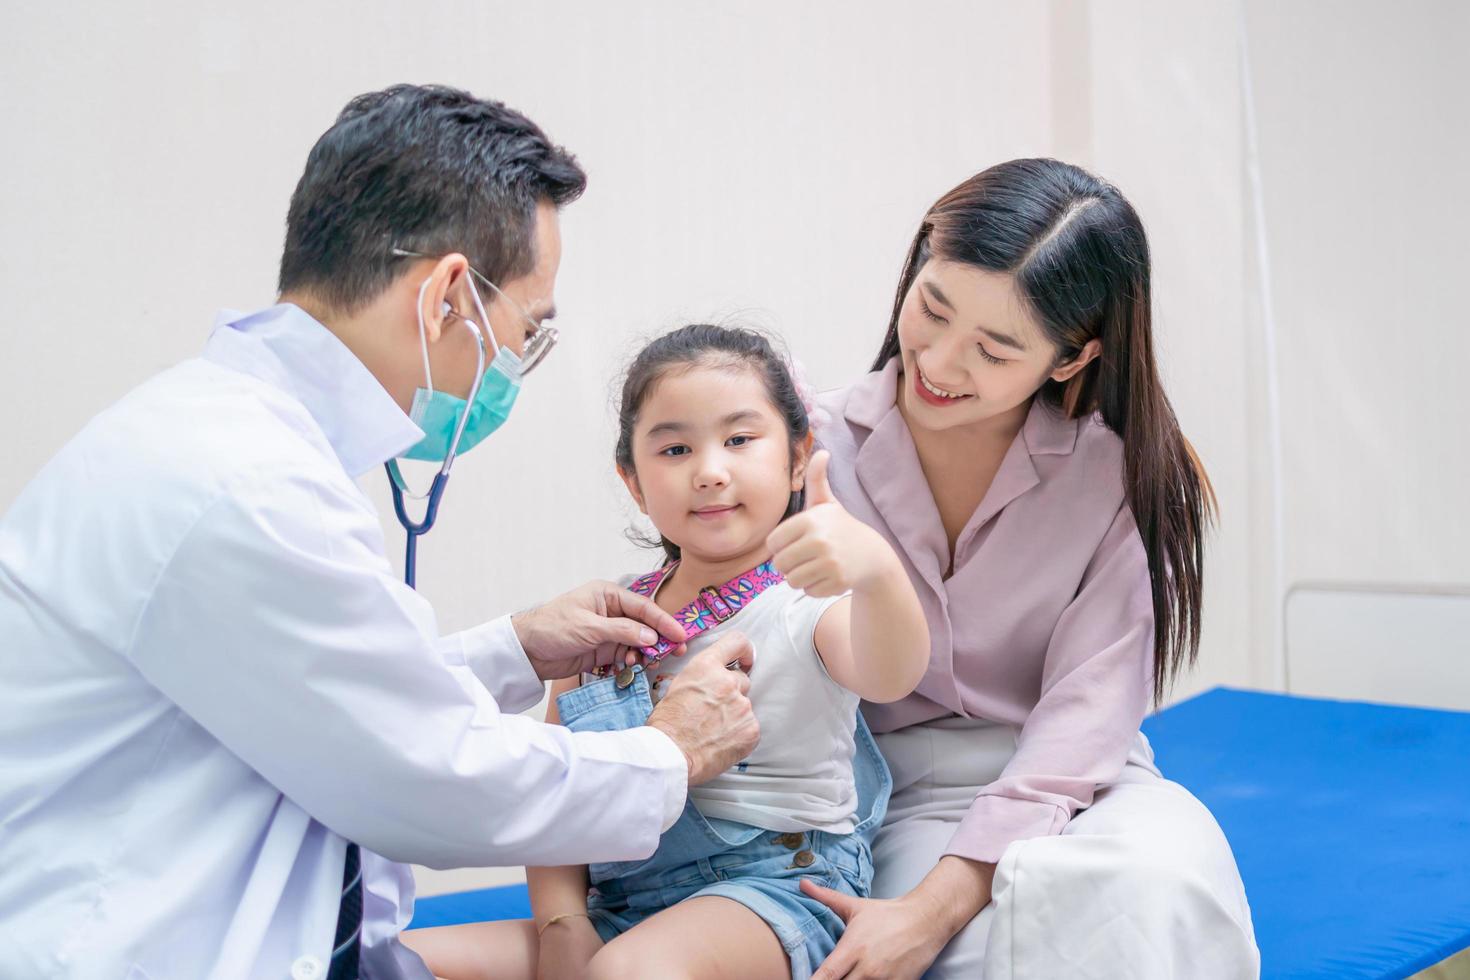 niño niña paciente visita al médico con la madre, médico pediatra que examina al pequeño paciente usando un estetoscopio foto